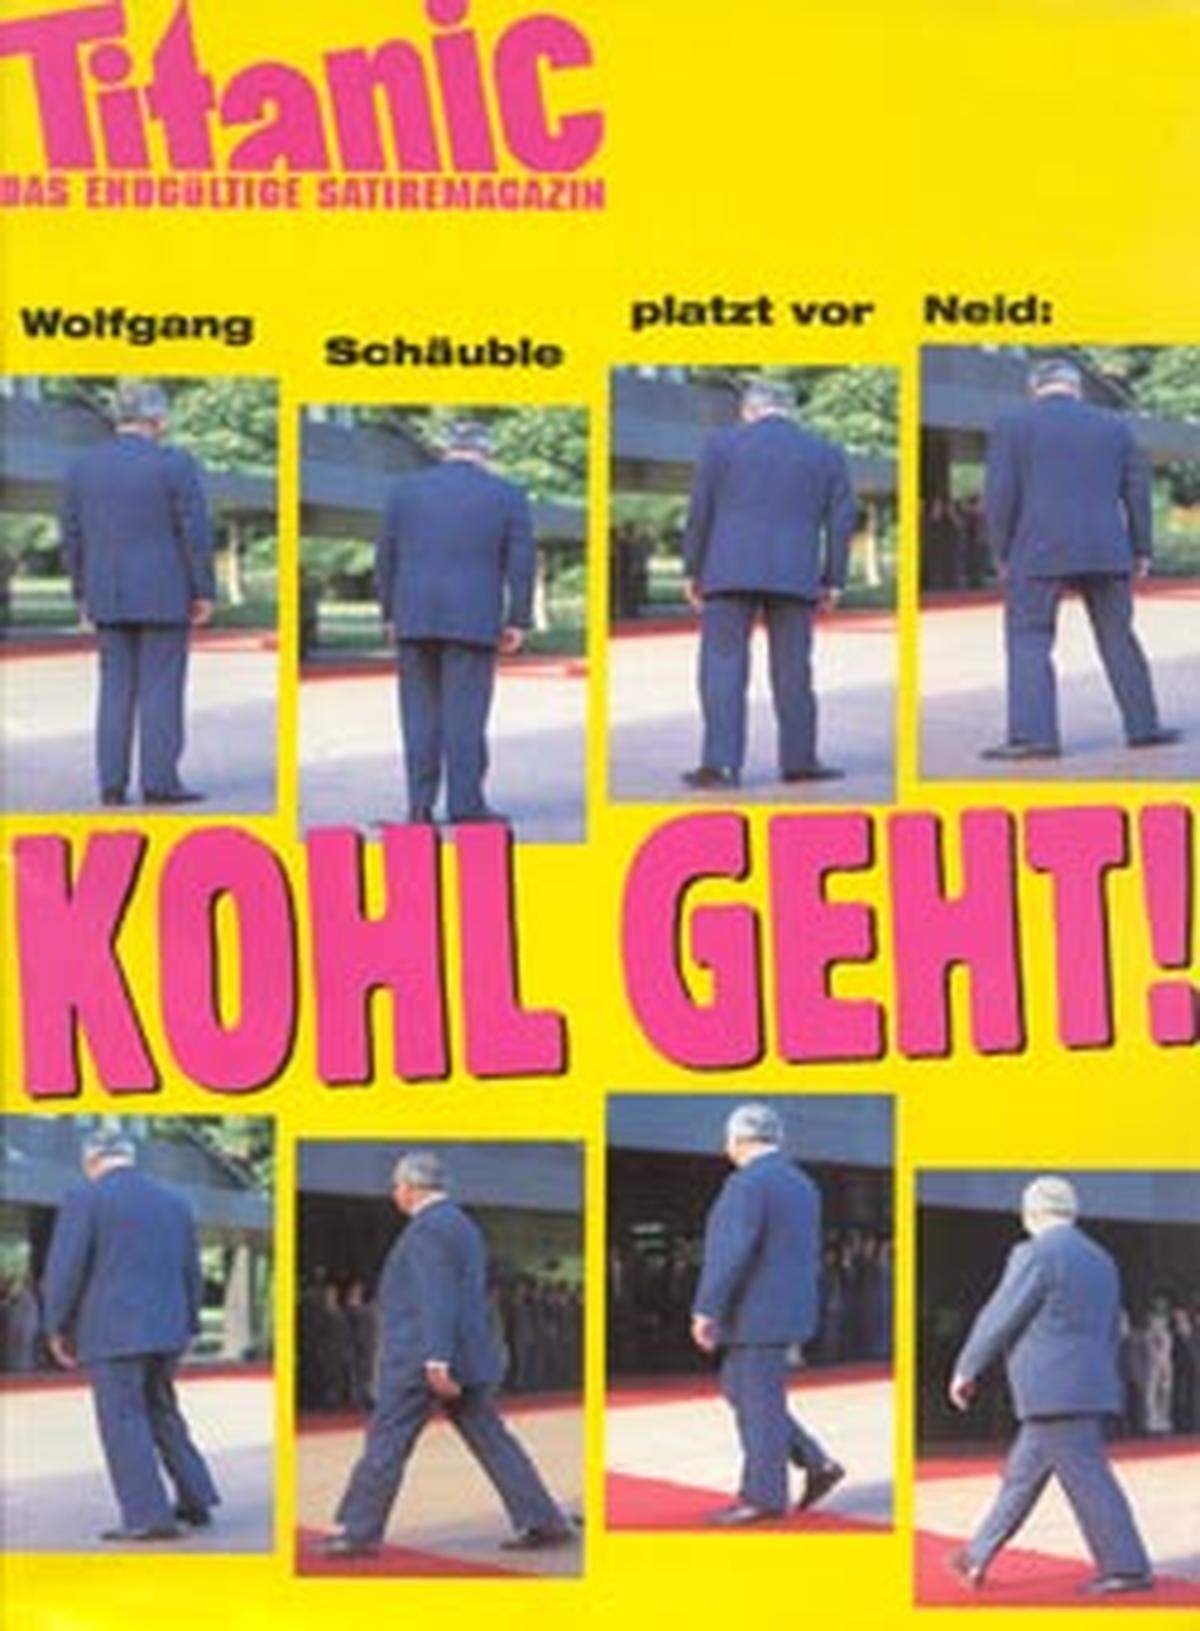 "Wolfgang Schäuble platzt vor Neid: Kohl geht!"